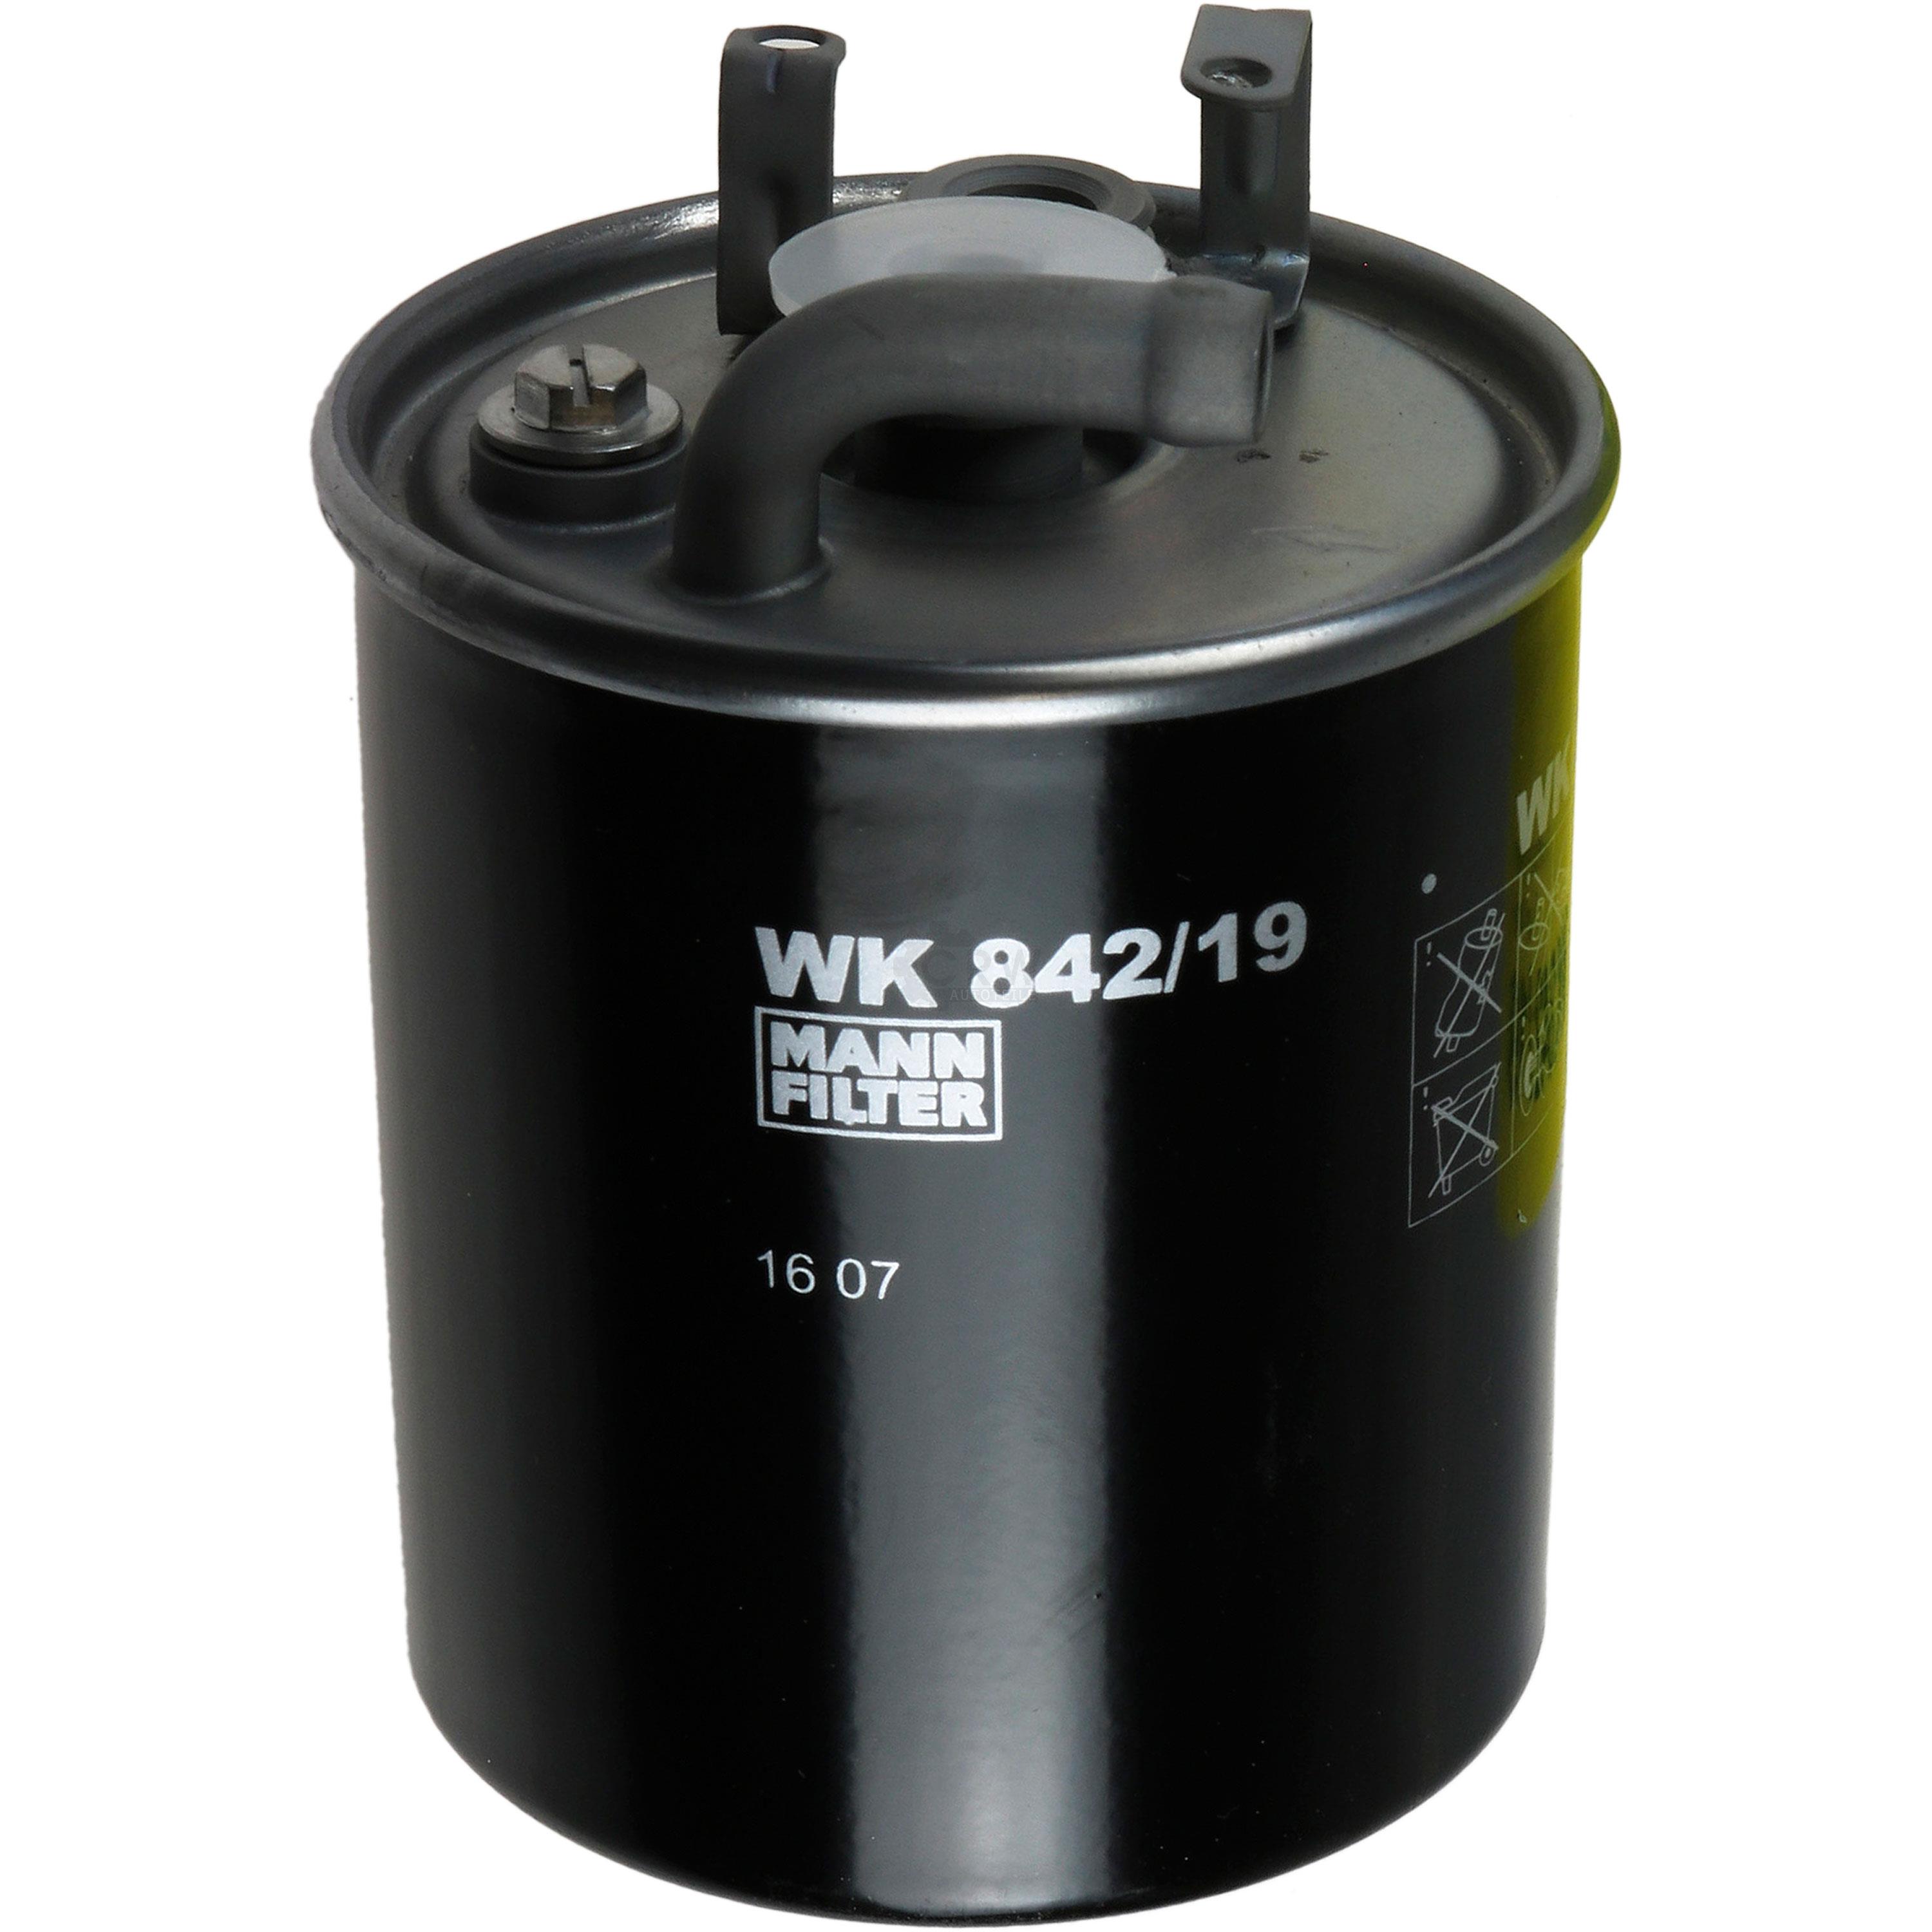 MANN-FILTER Kraftstofffilter WK 842/19 Fuel Filter